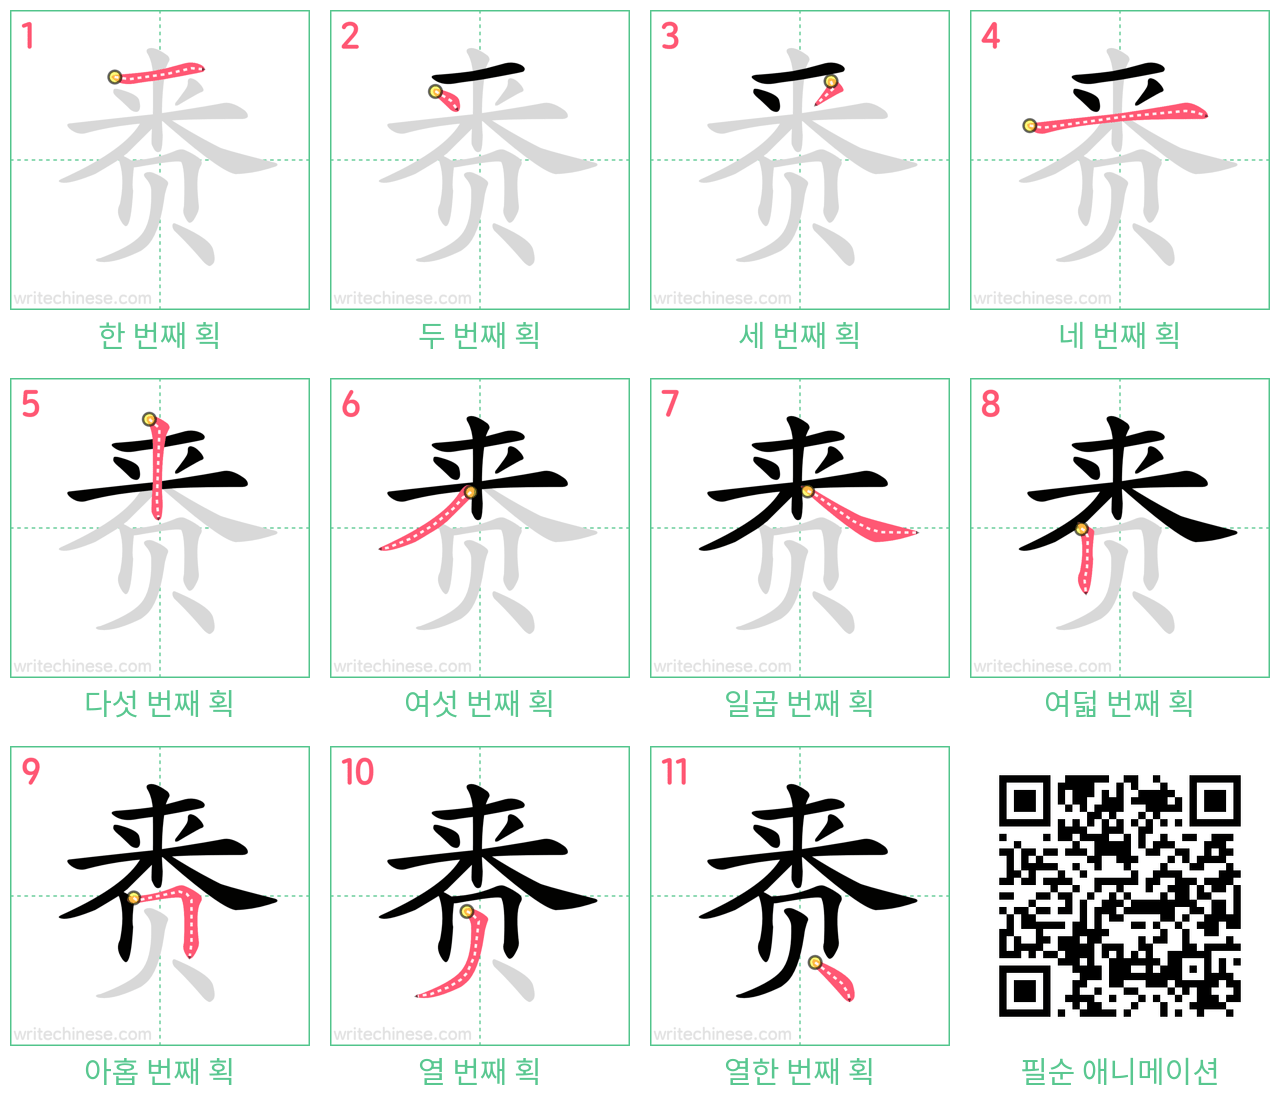 赉 step-by-step stroke order diagrams